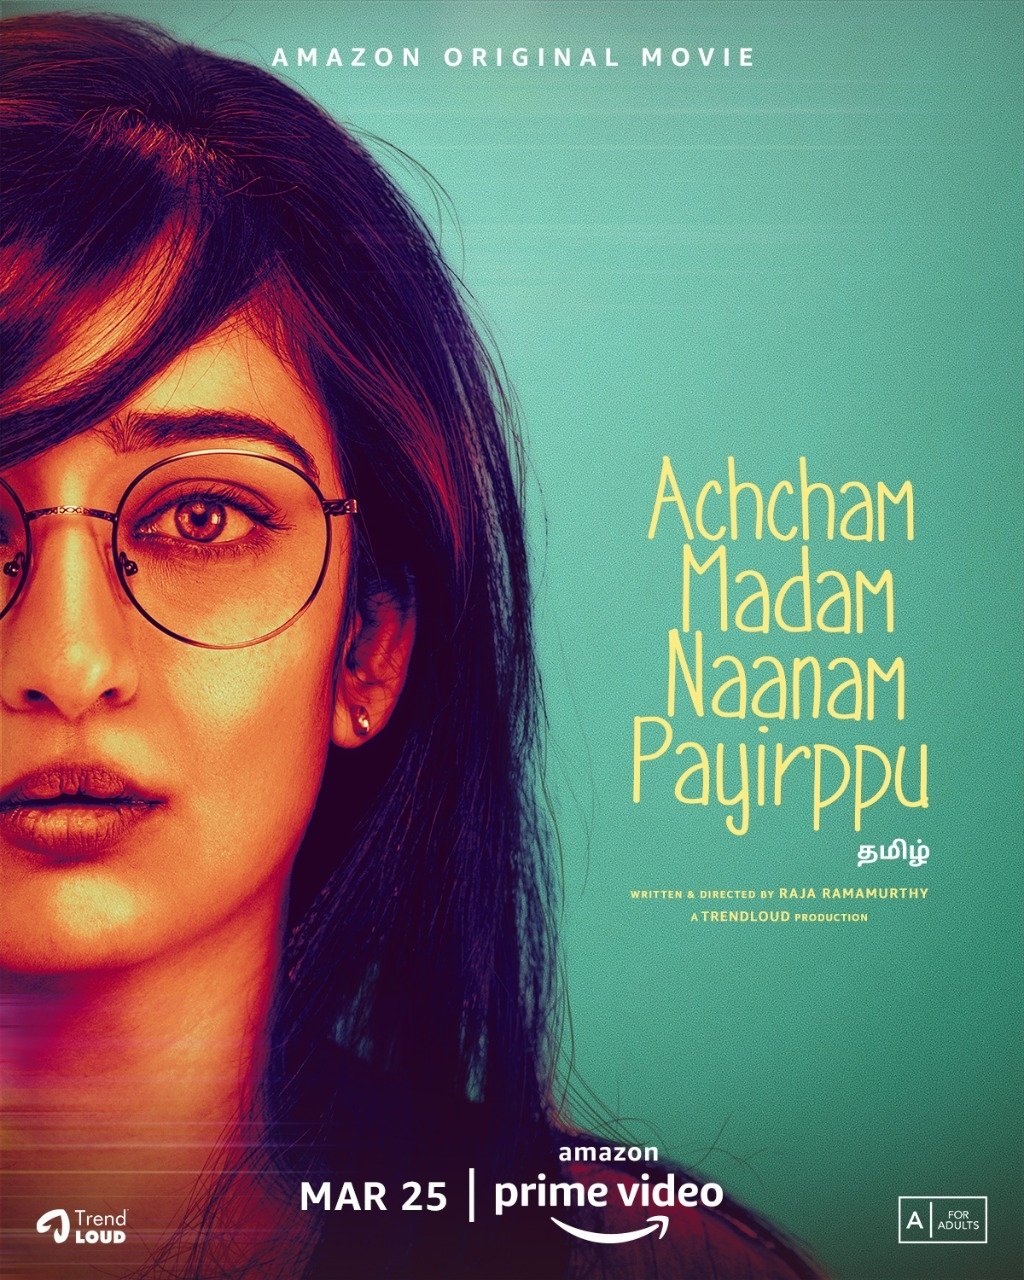 Achcham Madam Naanam Payirppu (2020)